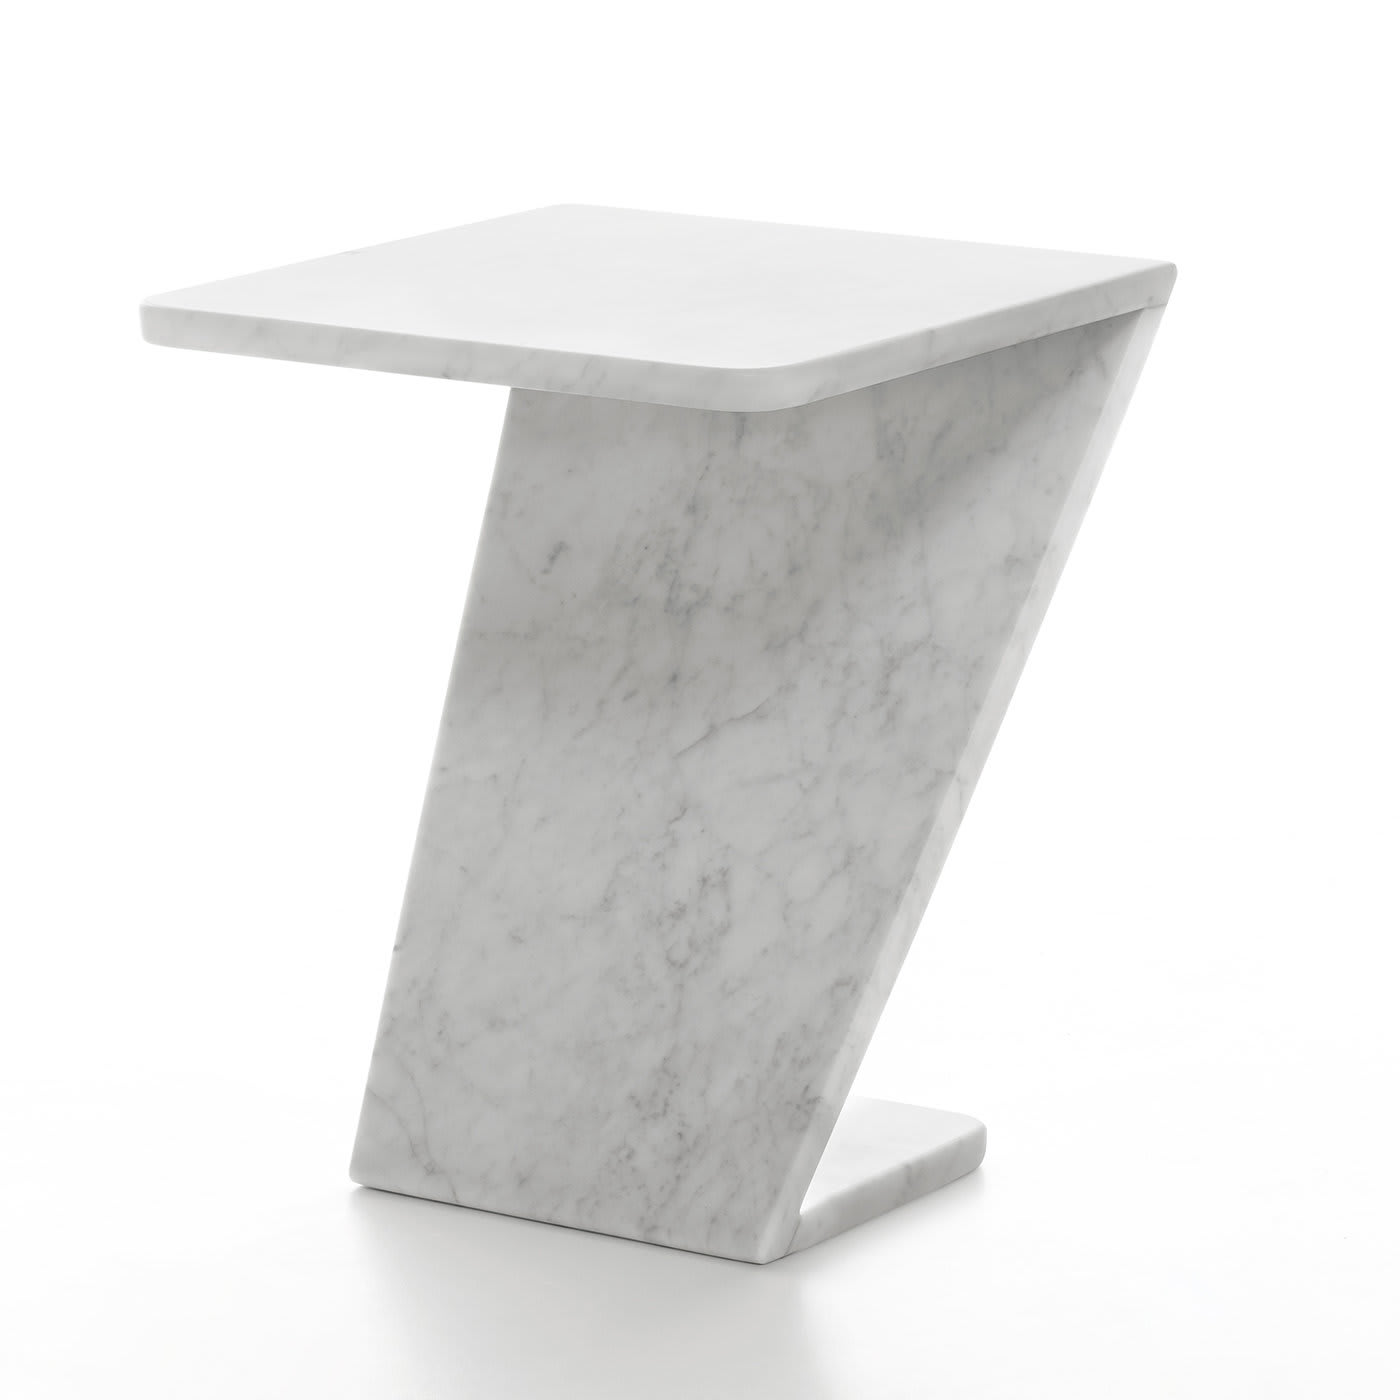 TILTINO SIDE TABLE - Design Thomas Sandell 2011 - Marsotto Edizioni